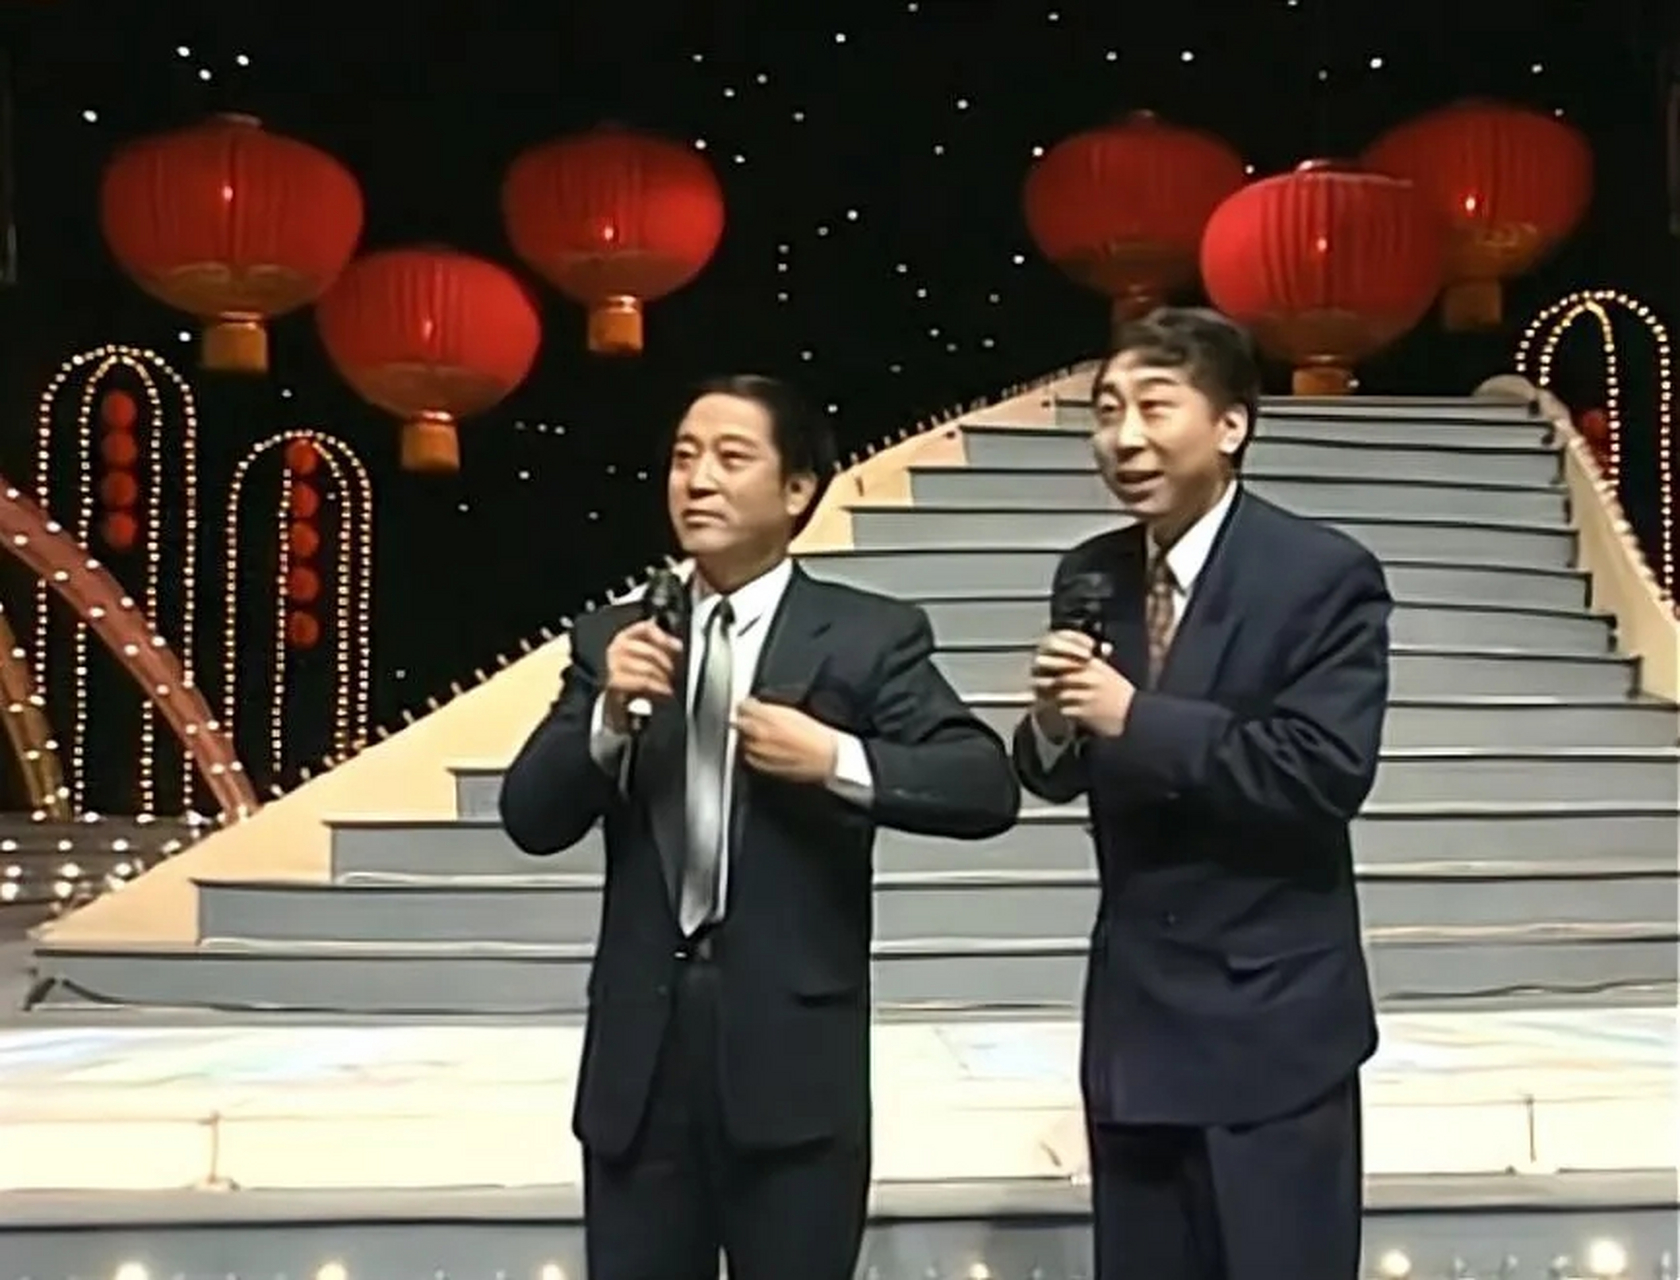 1994年春晚上,冯巩和牛群说了一段相声,叫《点子公司》,专门回答现场